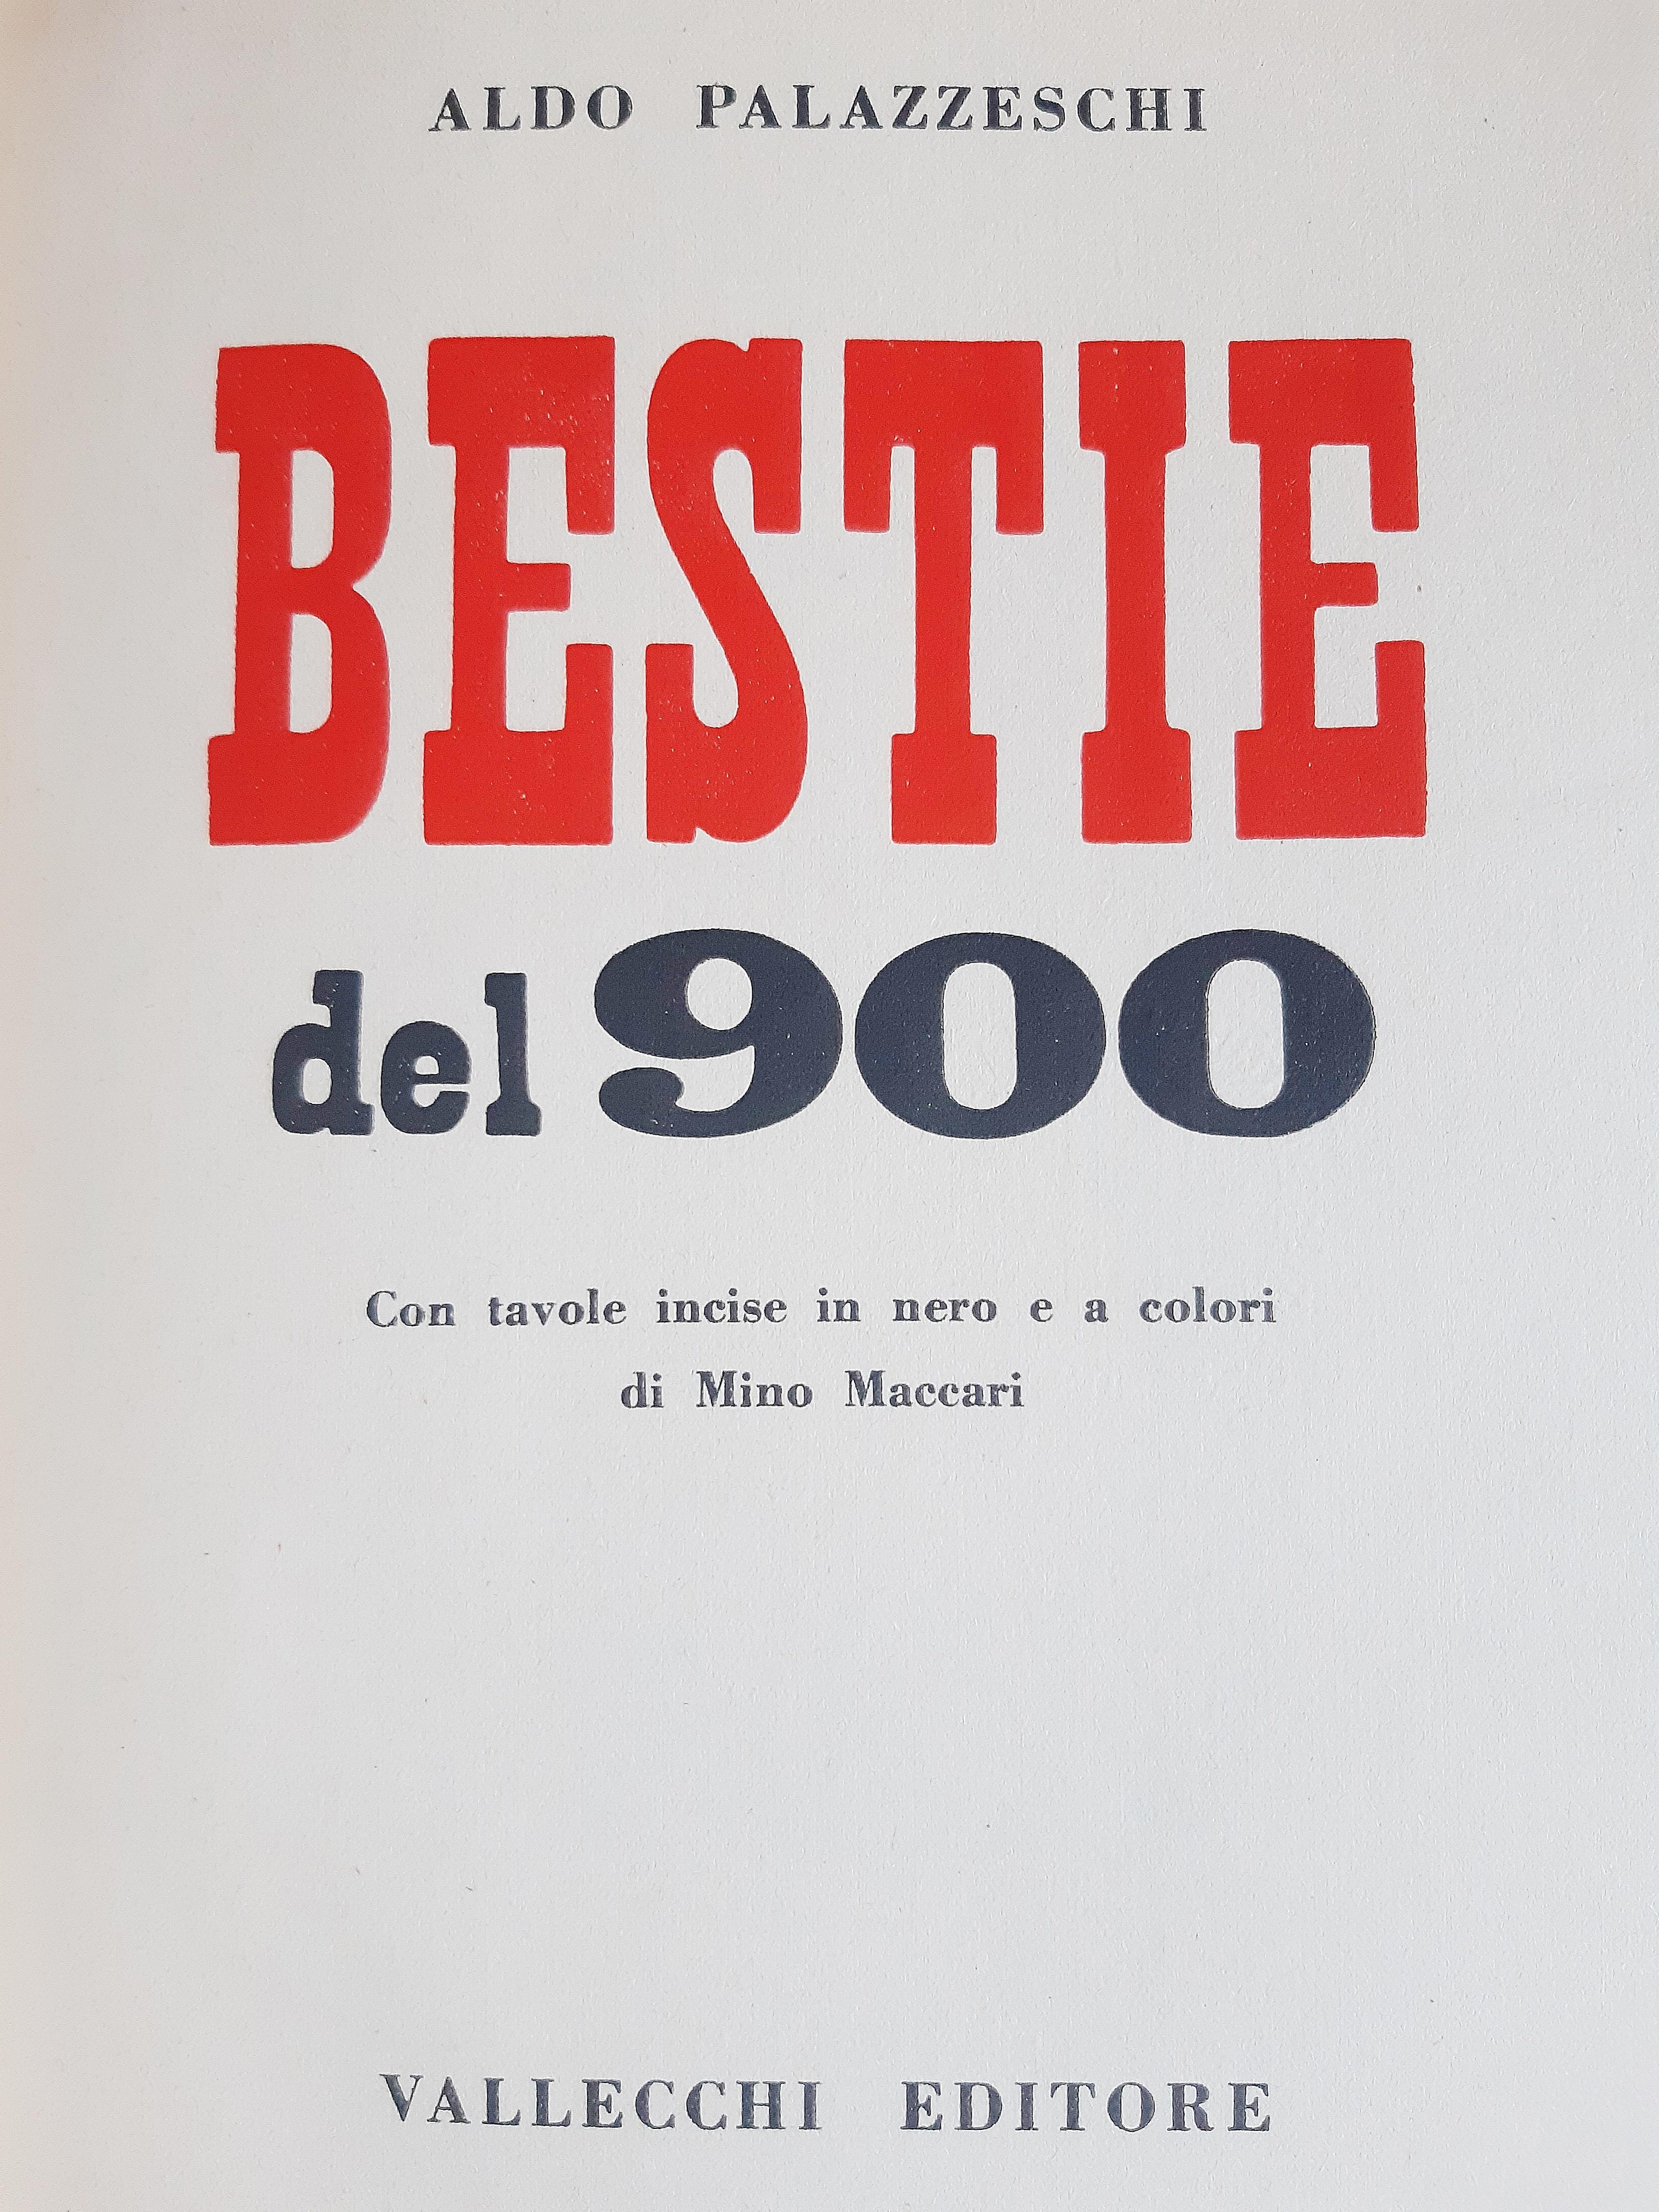 Bestie del '900 - Rare Book Illustrated by Mino Maccari - 1951 For Sale 4